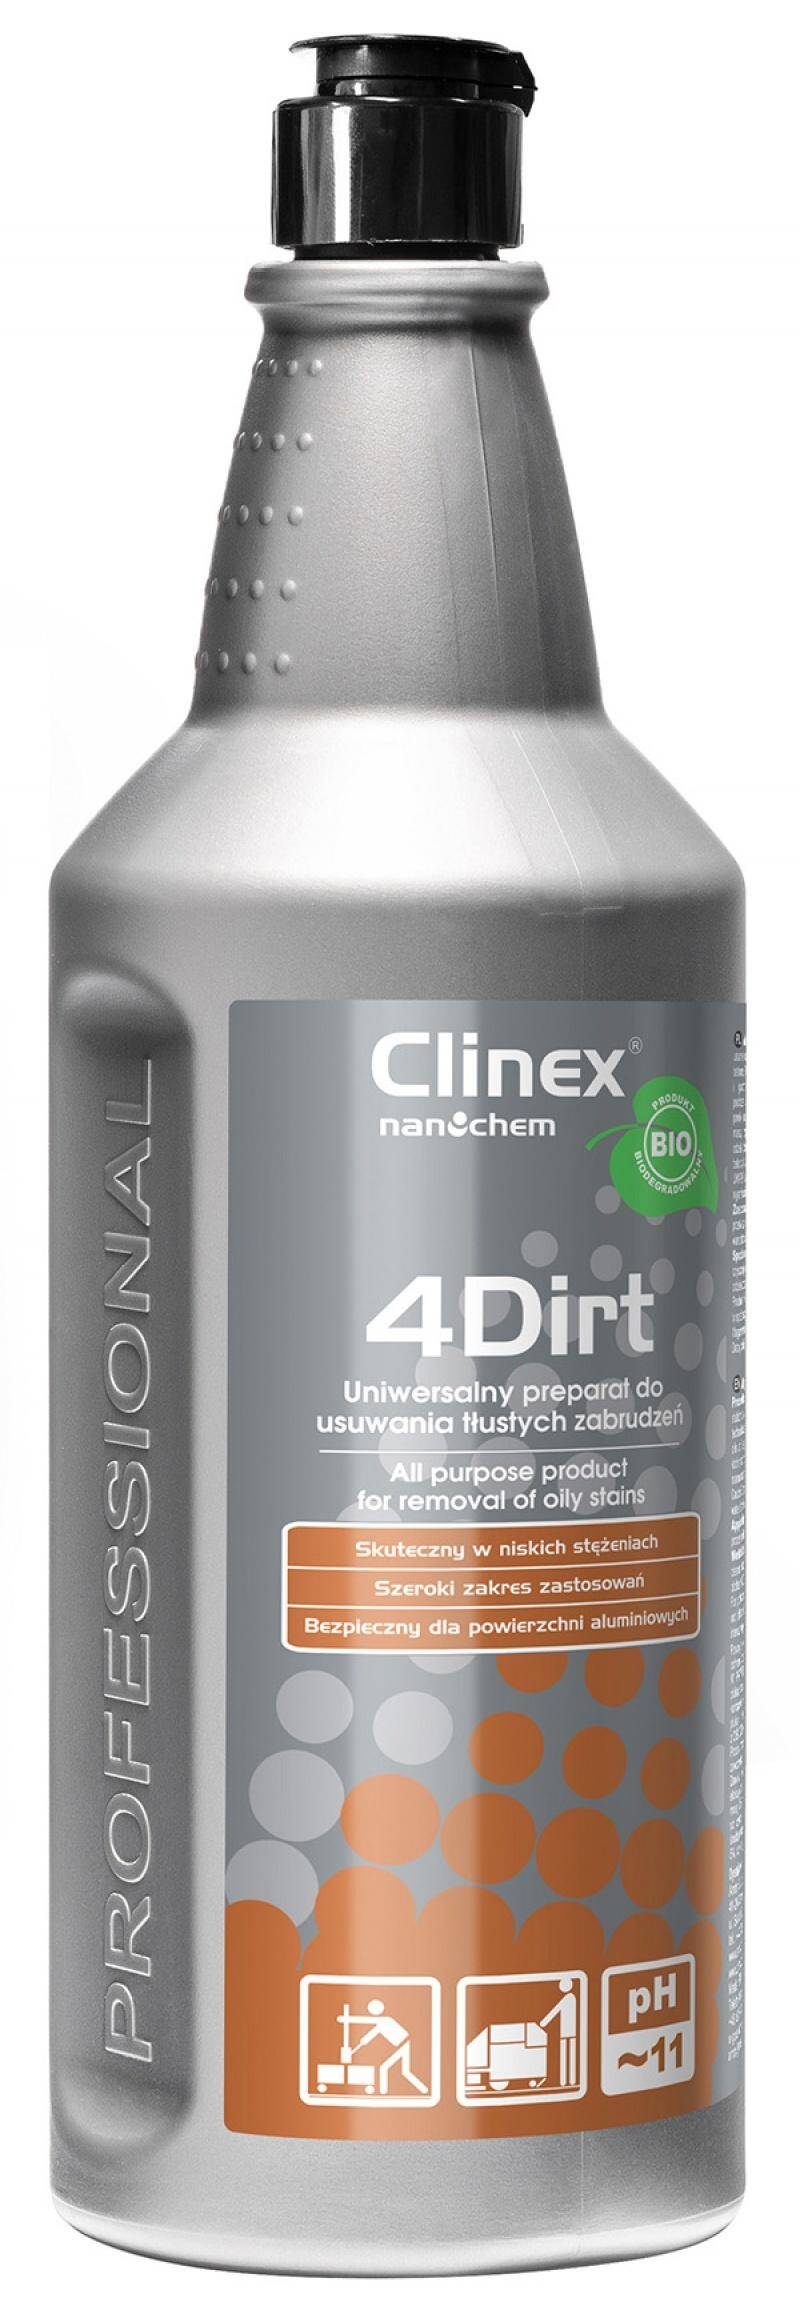 Preparat CLINEX 4Dirt 1L  do usuwania